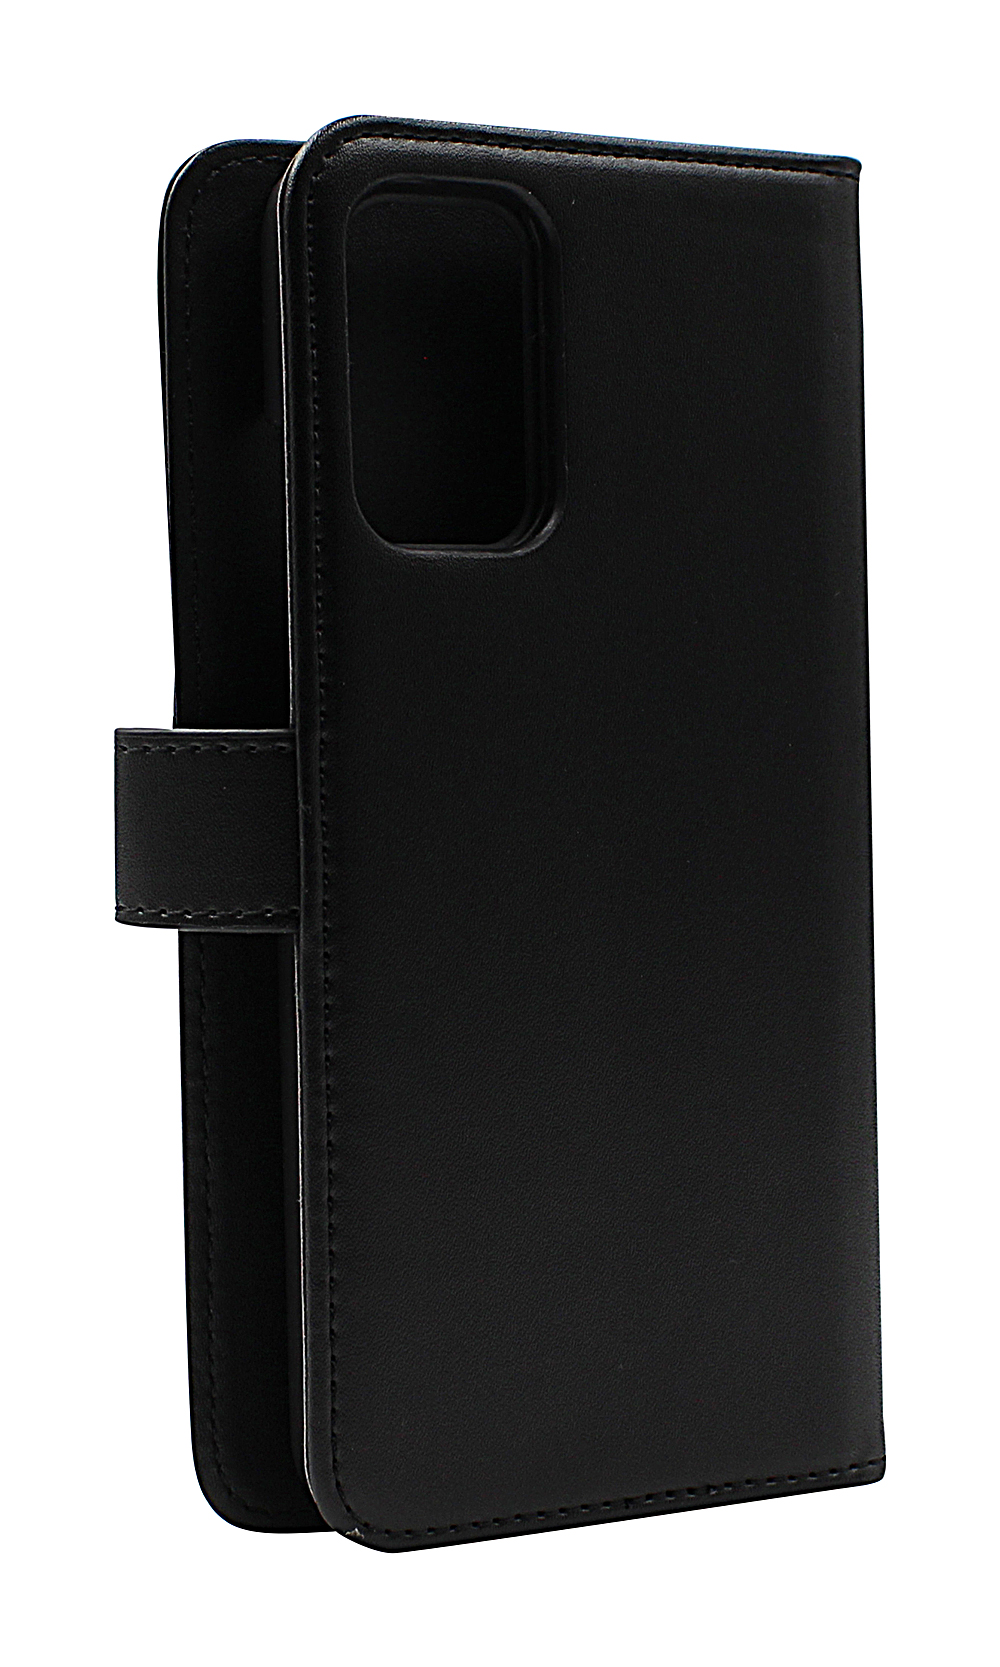 CoverInSkimblocker XL Magnet Fodral Xiaomi Redmi 9T